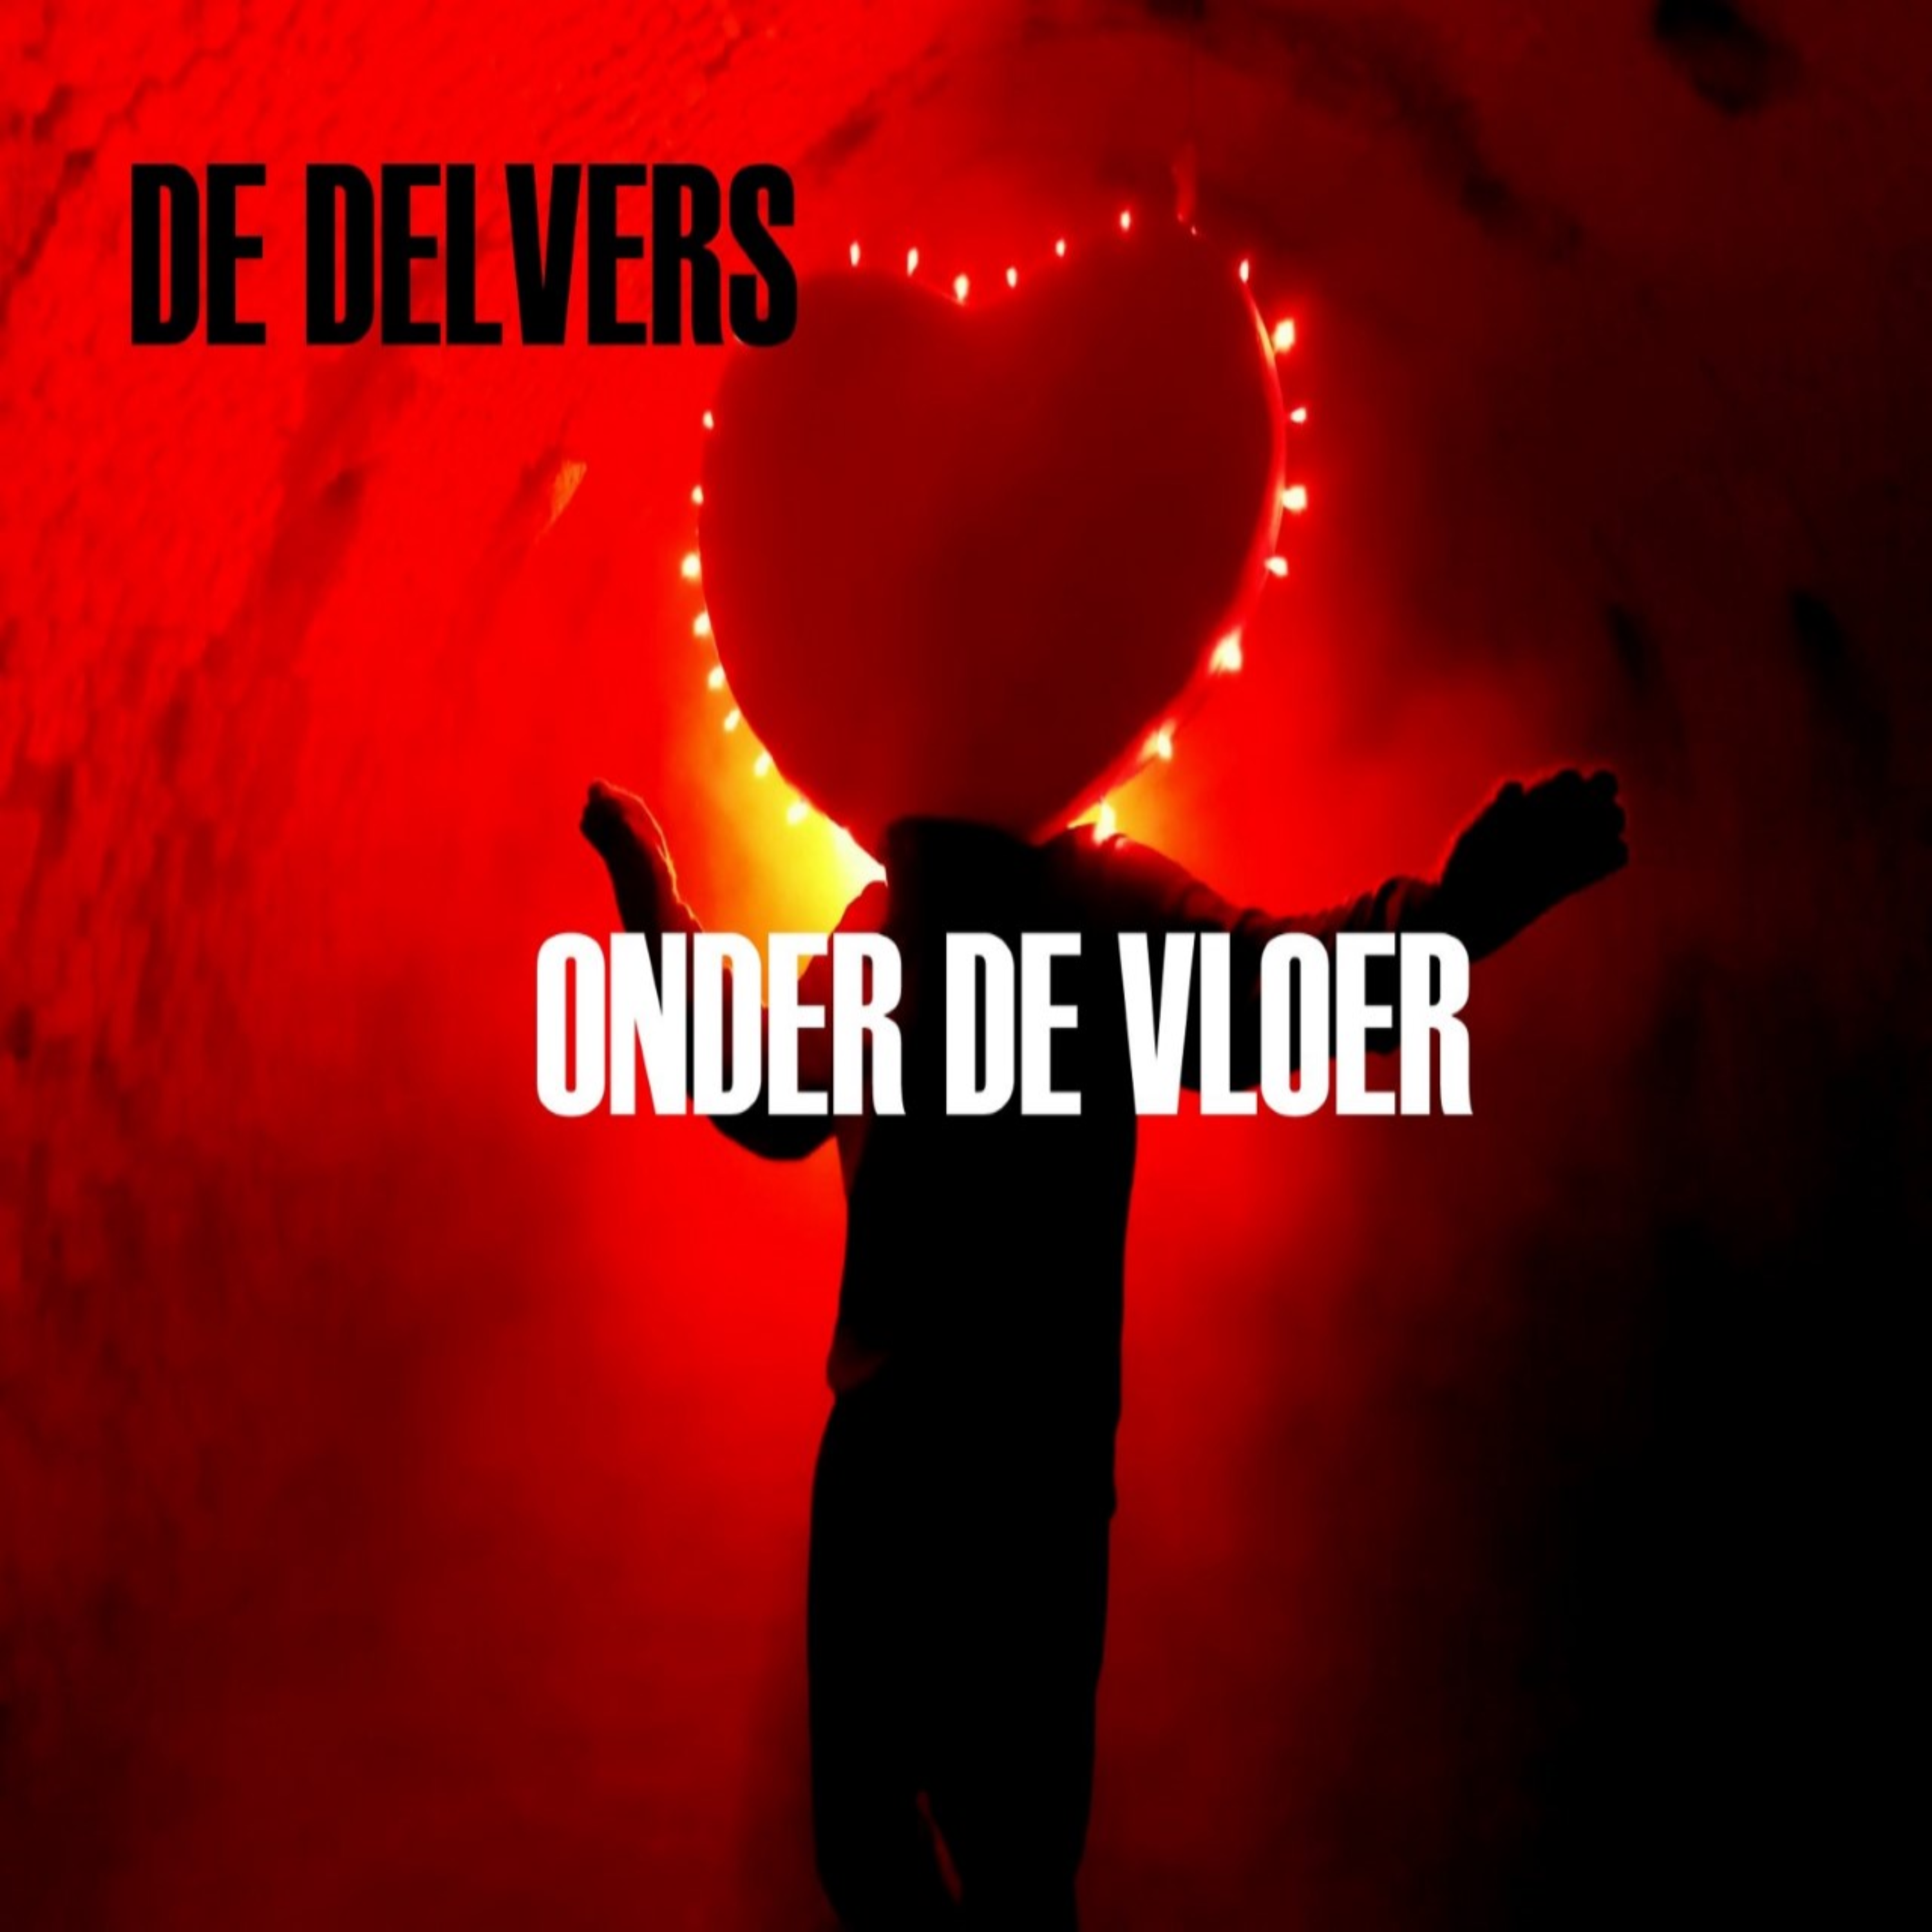 De Delvers - Onder de vloer (feat. Rene Hulshbosch - Struggler) front cover